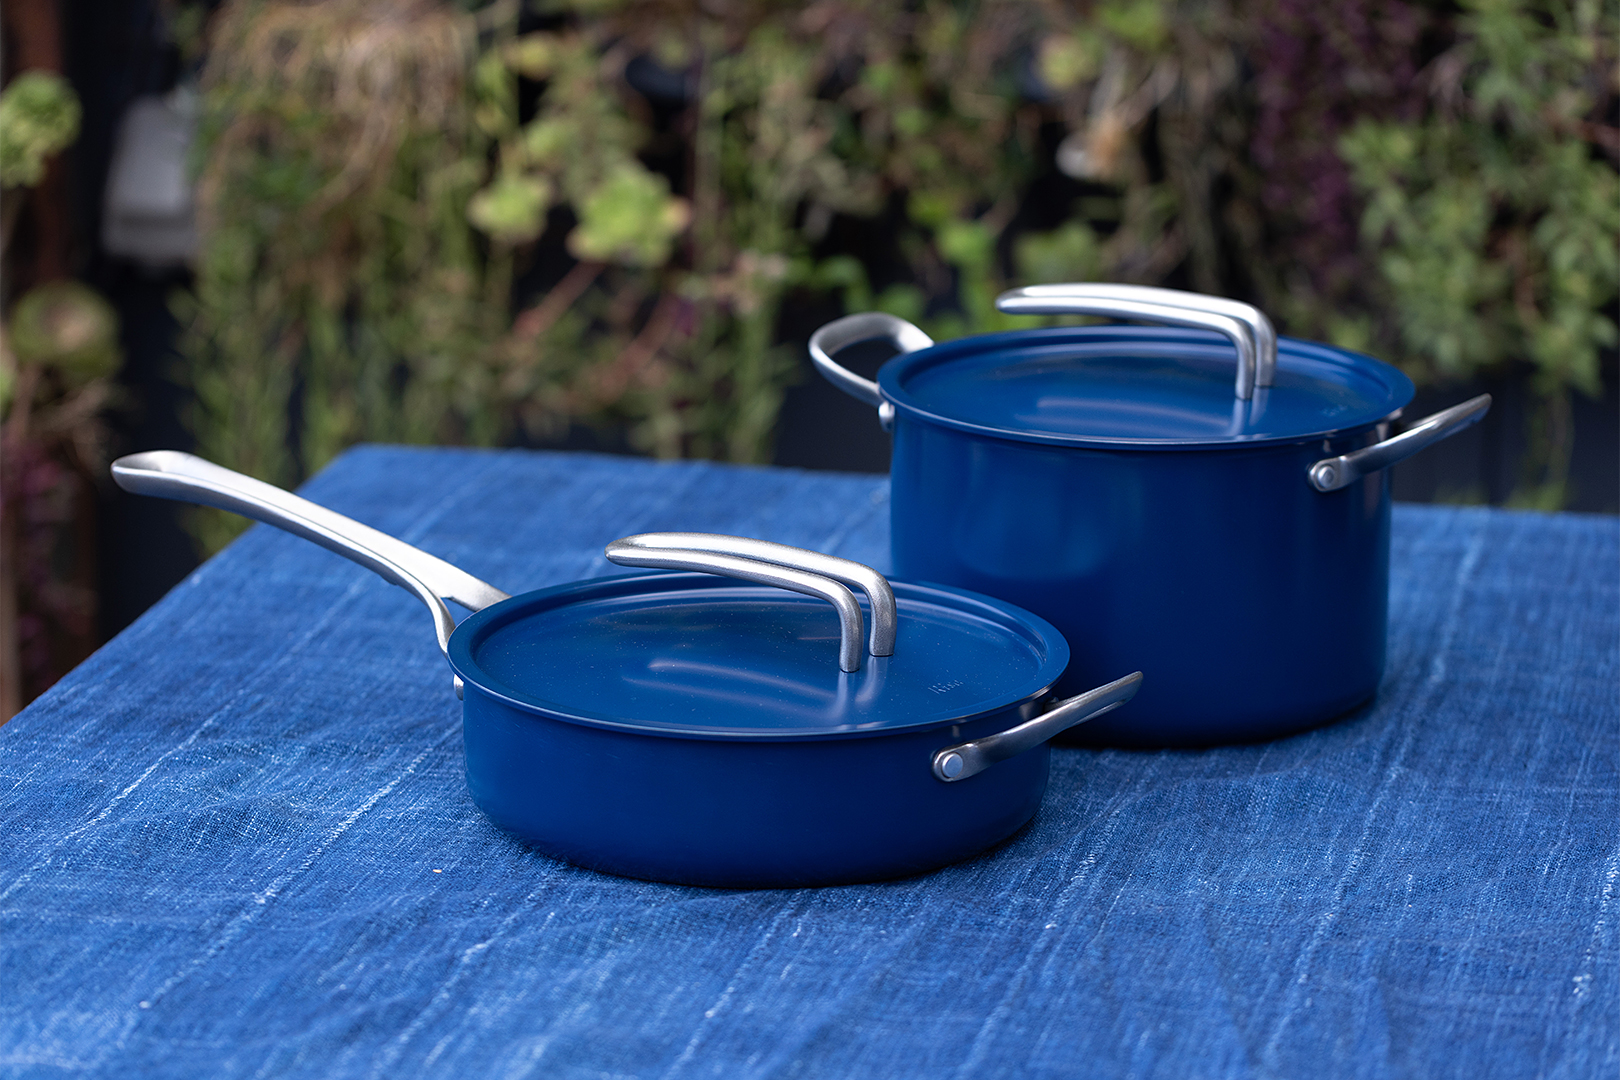 Induction Cookware Pot and Pan Set by Eva Longoria - Nonstick, Ceramic  Coatin